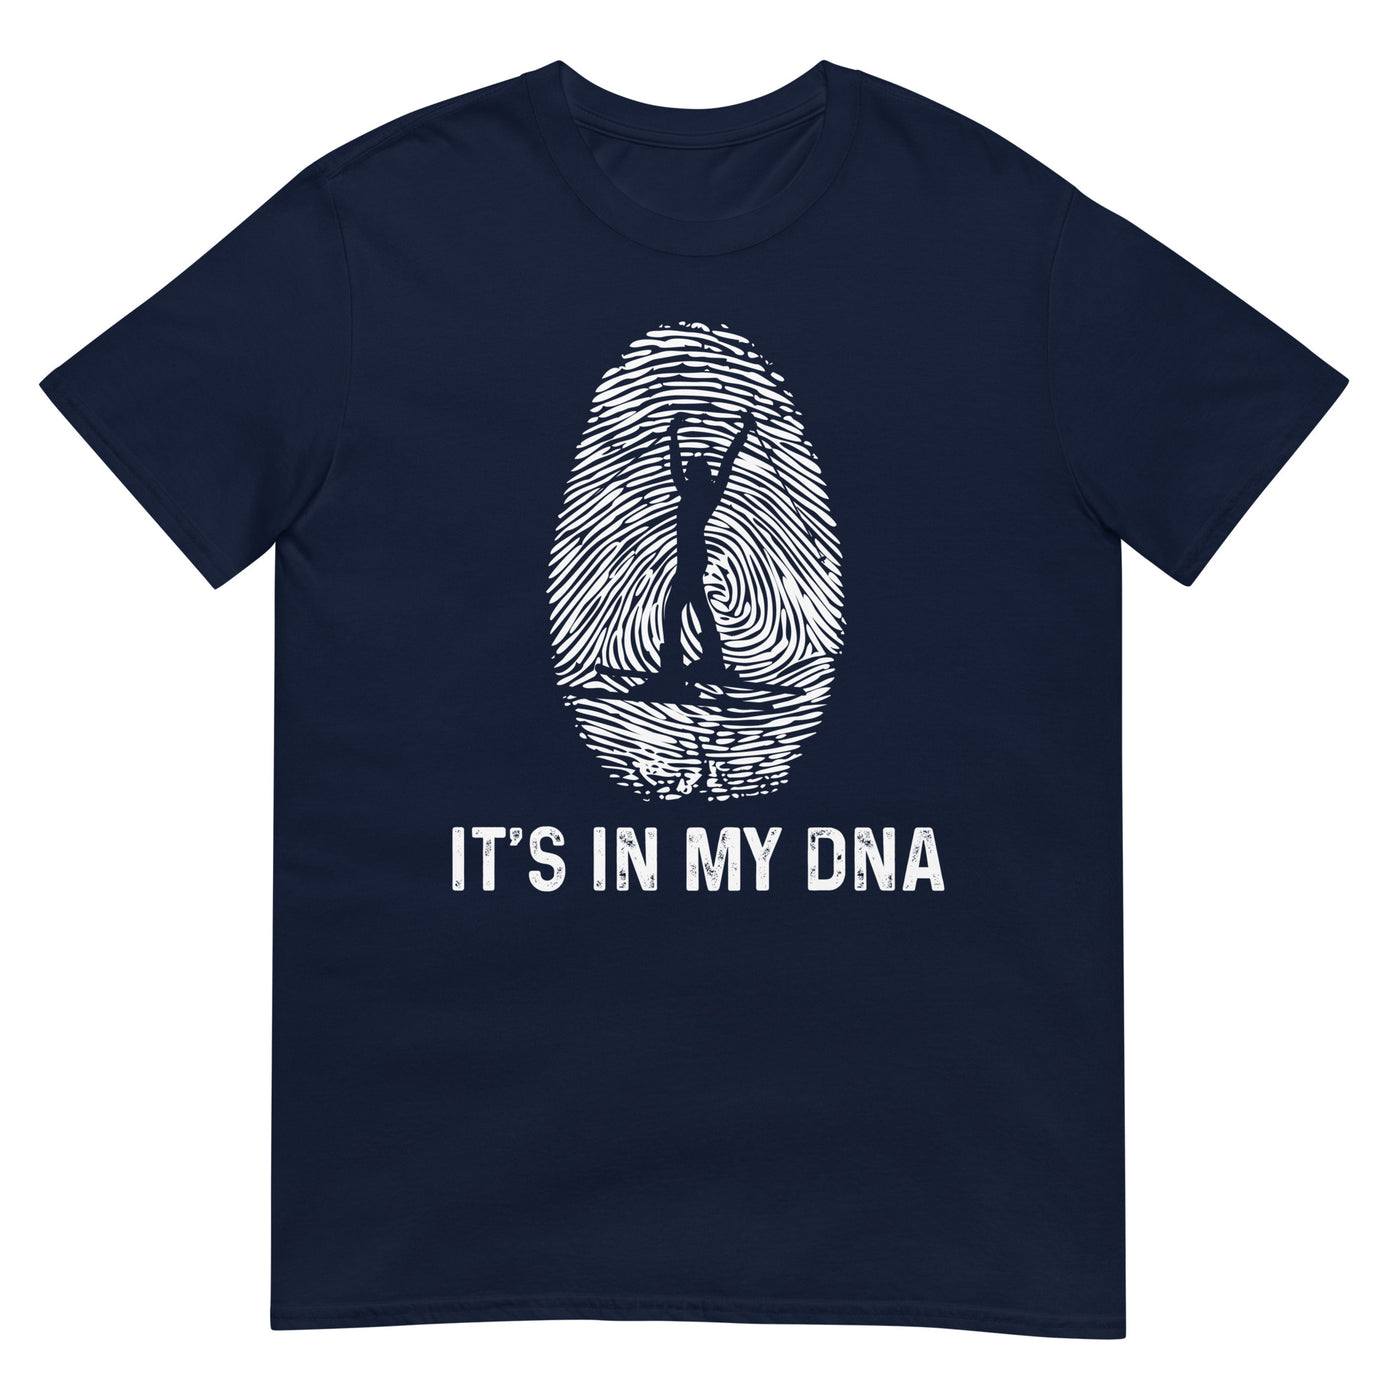 It's In My DNA 1 - T-Shirt (Unisex) klettern ski xxx yyy zzz Navy